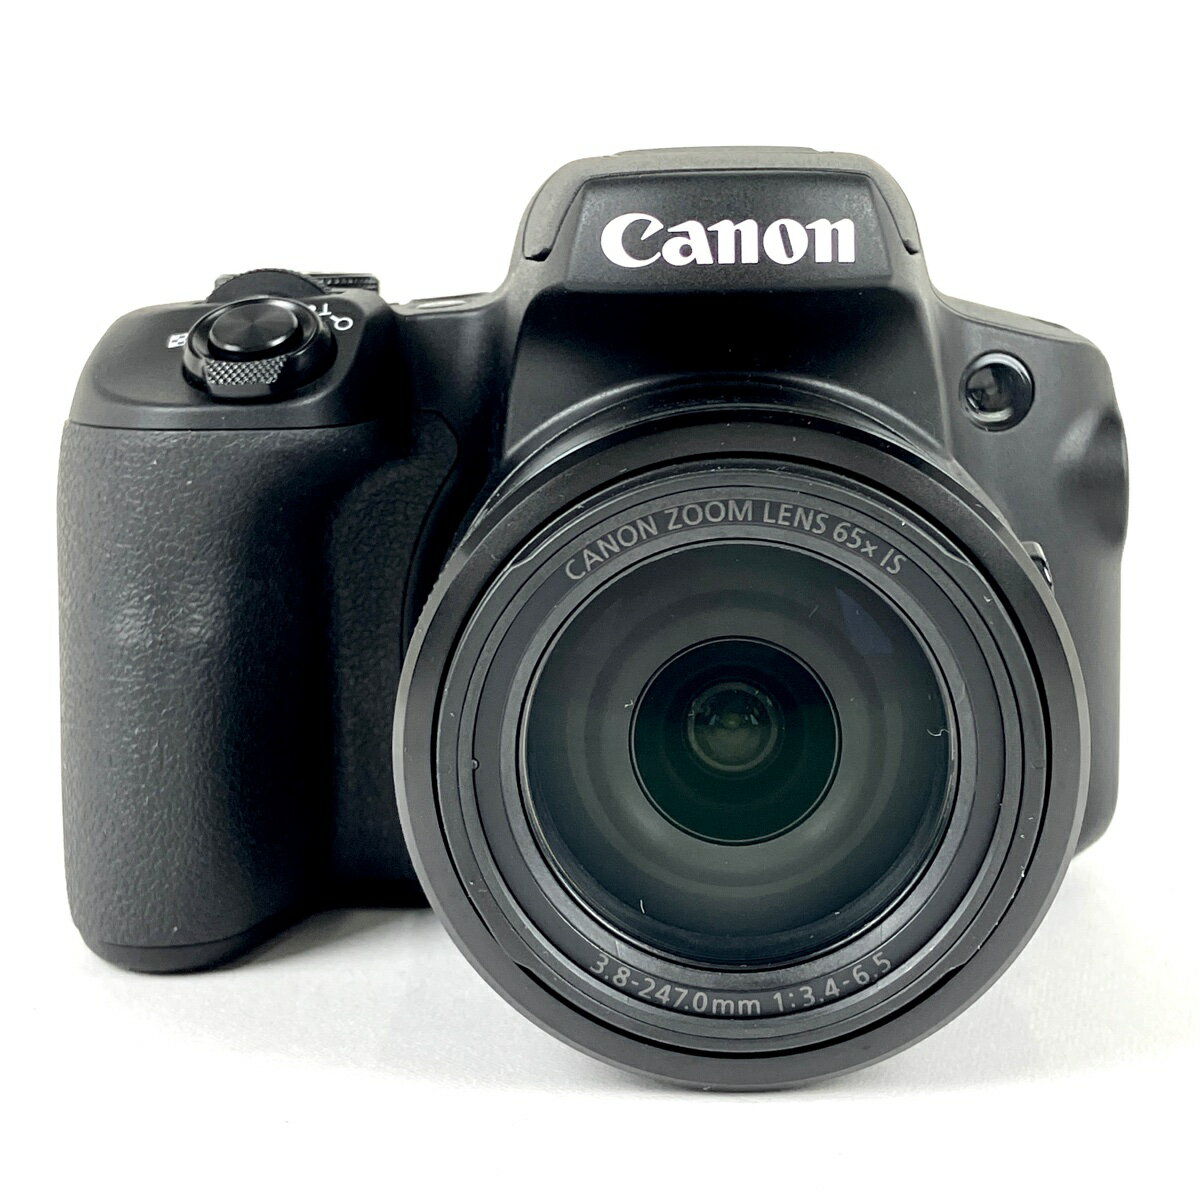 キヤノン Canon PowerShot SX70HS コンパクトデジタルカメラ 【中古】